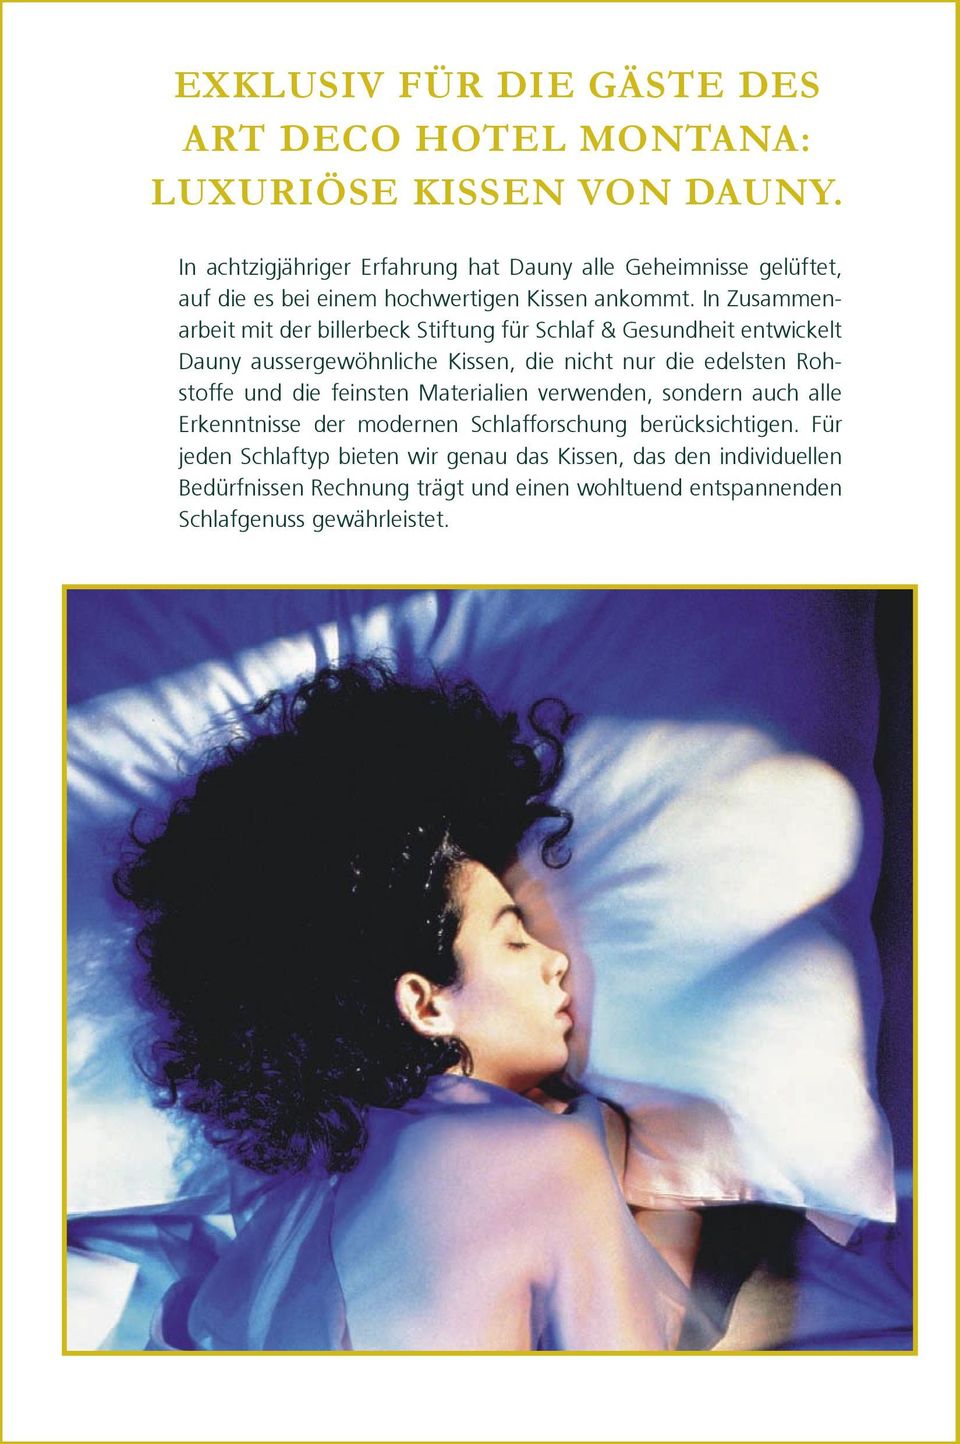 In Zusammenarbeit mit der billerbeck Stiftung für Schlaf & Gesundheit entwickelt Dauny aussergewöhnliche Kissen, die nicht nur die edelsten Rohstoffe und